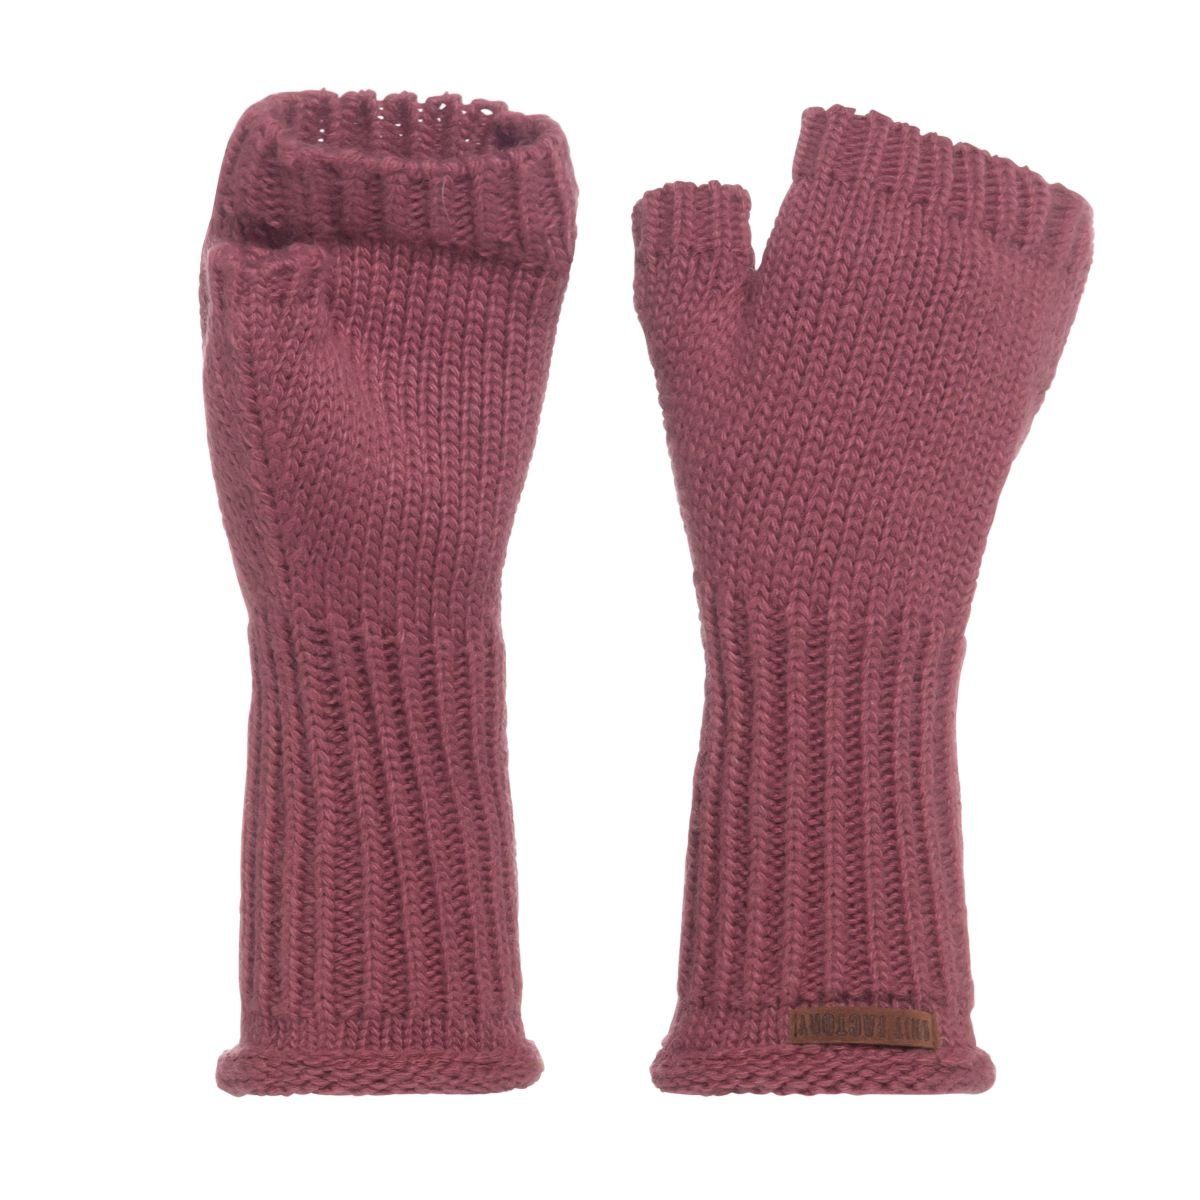 Finger Handschuhe Stone Cleo Glatt ihne Strickhandschuhe Size Handschuhe One Red Handstulpen Knit Rot Factory Handschuhe